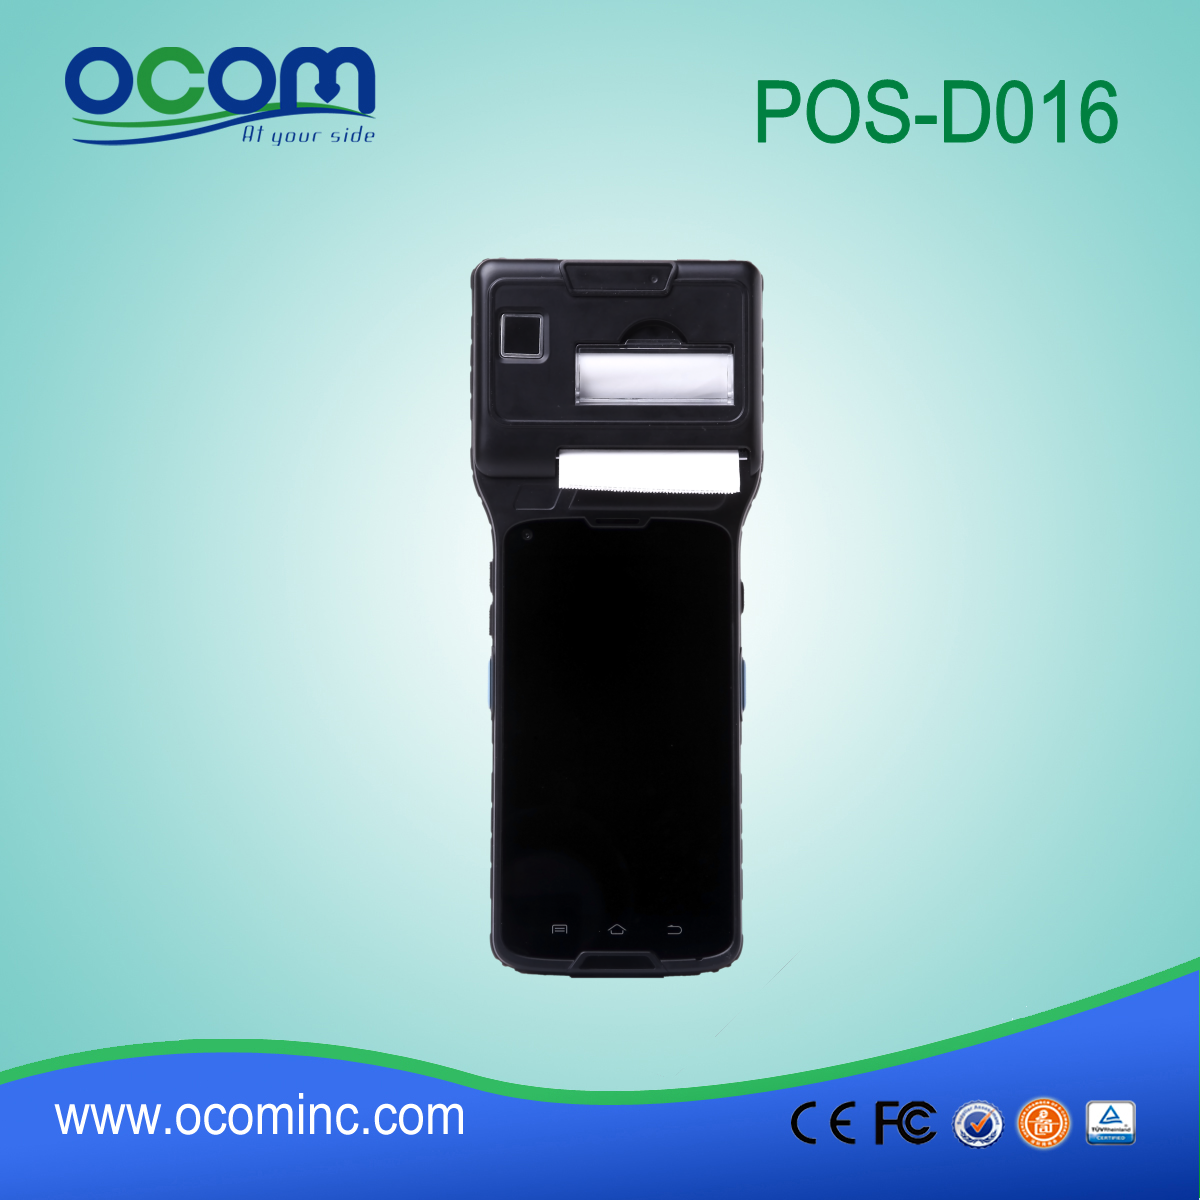 5 '' شاشة تعمل باللمس نقاط البيع الطرفية مع الجيل الثالث 3G (WCDMA) + واي فاي + BT + GPS + كاميرا + طابعة حرارية + NFC (OCBS-D016)